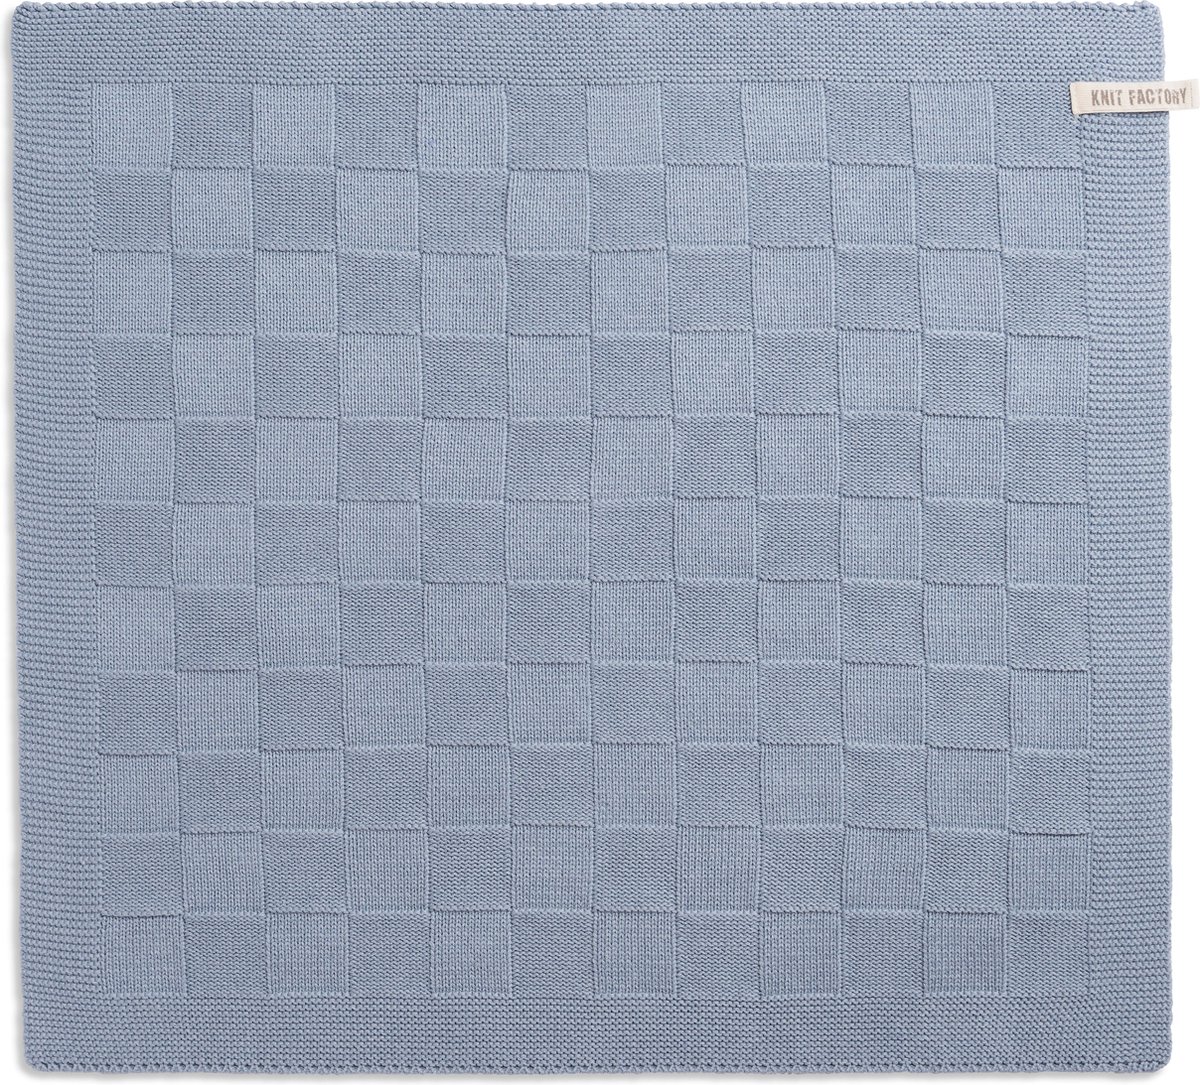 Knit Factory Gebreide Keukendoek - Keukenhanddoek Uni - Handdoek - Vaatdoek - Keuken doek - Licht Grijs - 50x50 cm